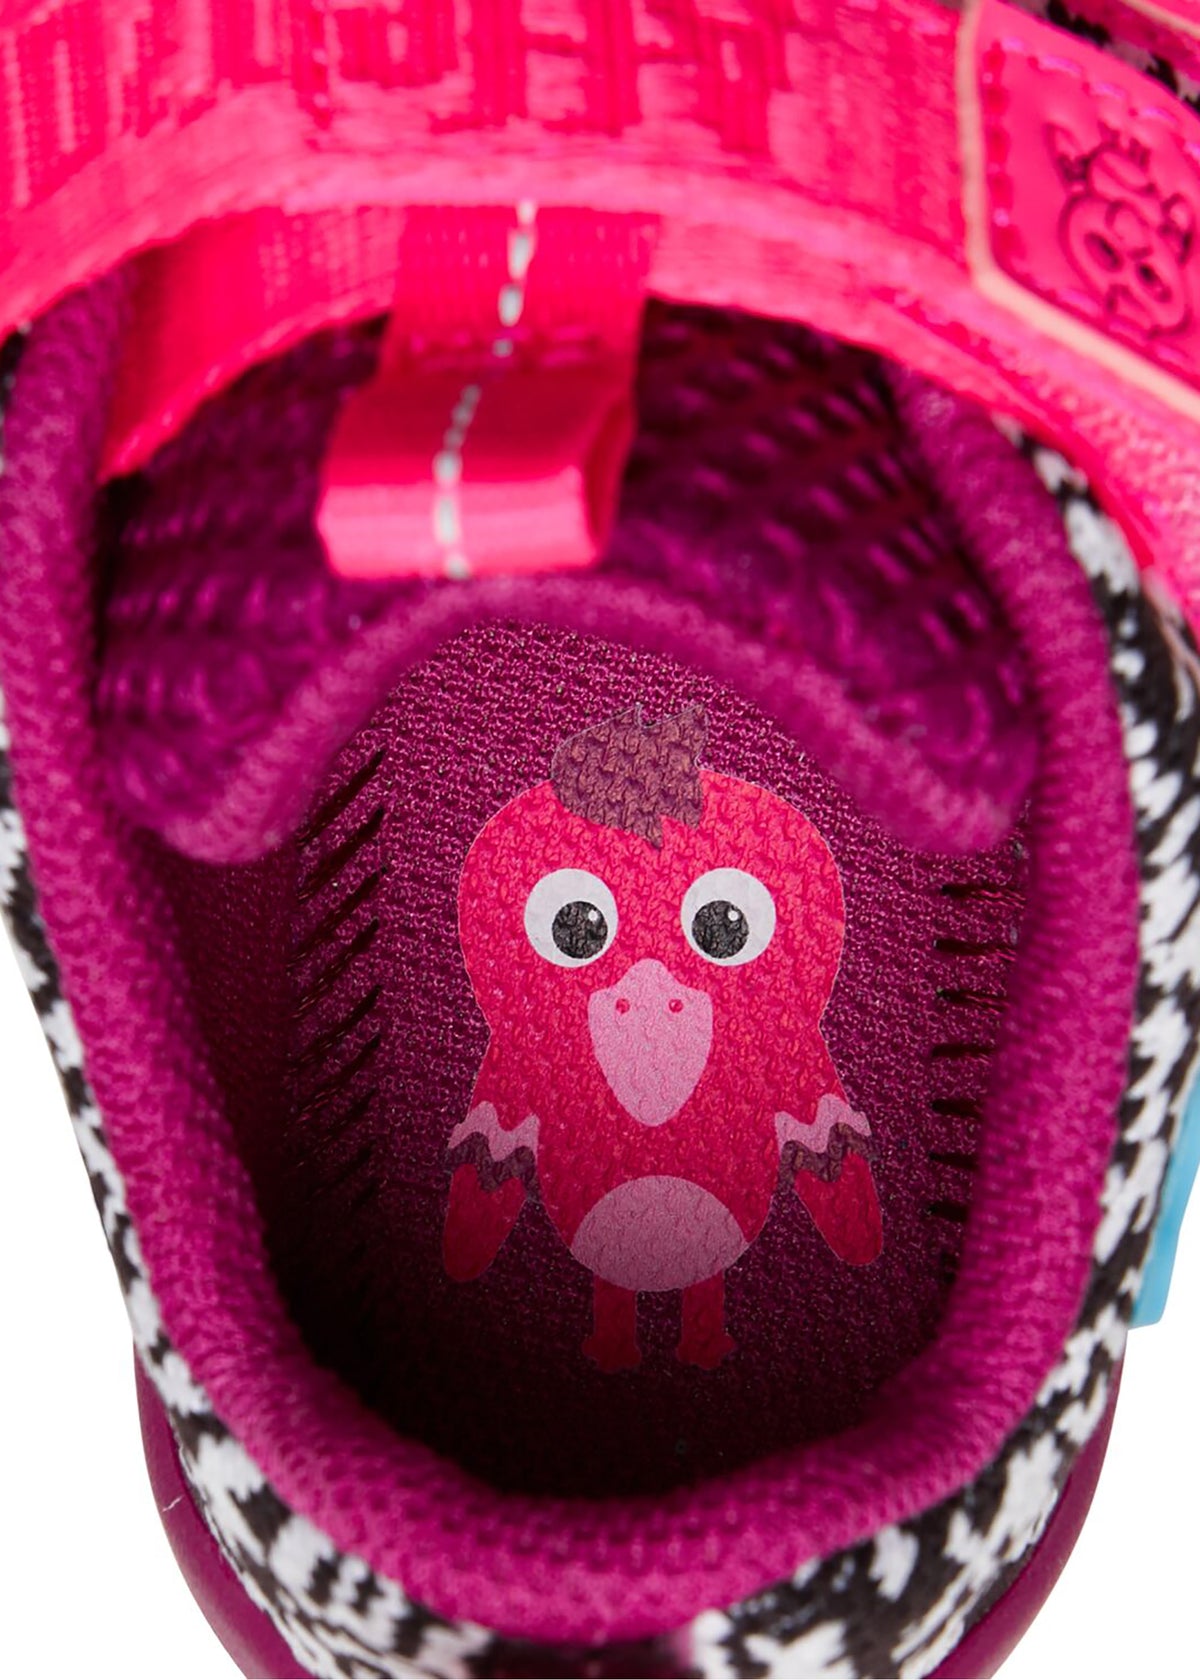 Lasten Flamingo-paljasjalkatennarit - Sneaker Knit Happy, musta-valkoinen neulos, violetti pohja, pinkit tarrat